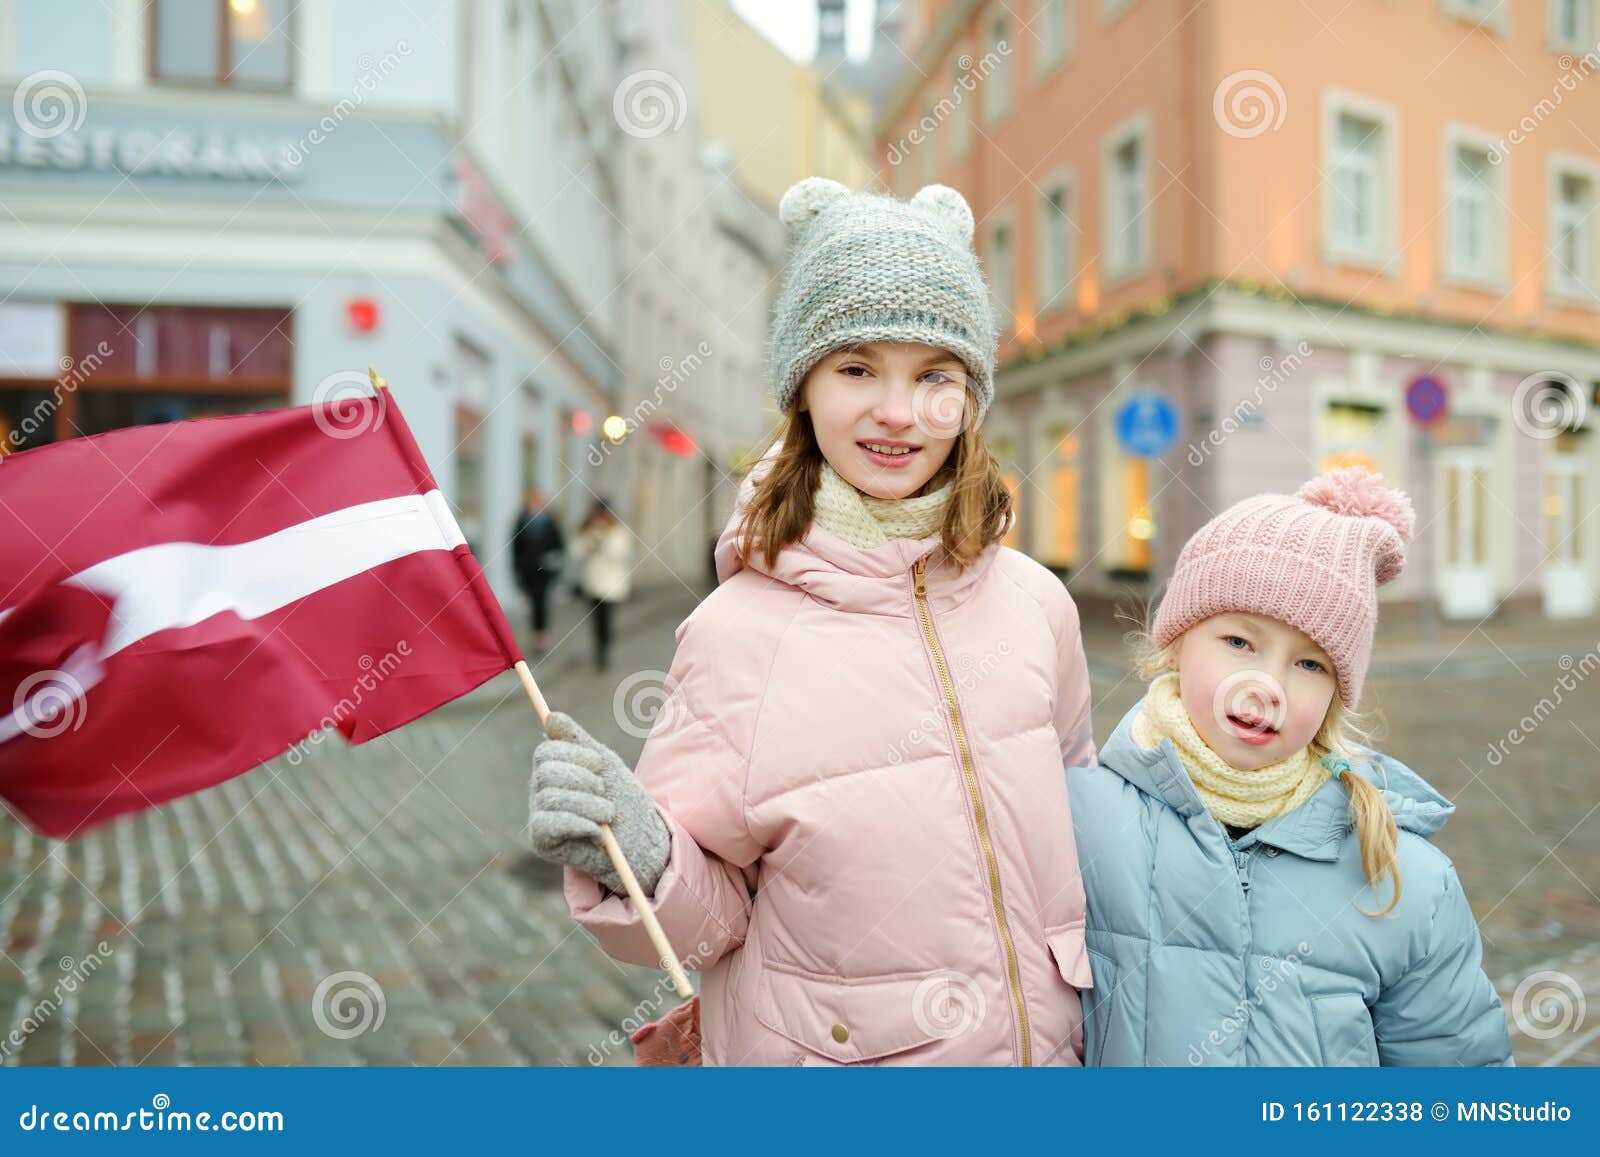 Latvia girls riga Riga nightlife